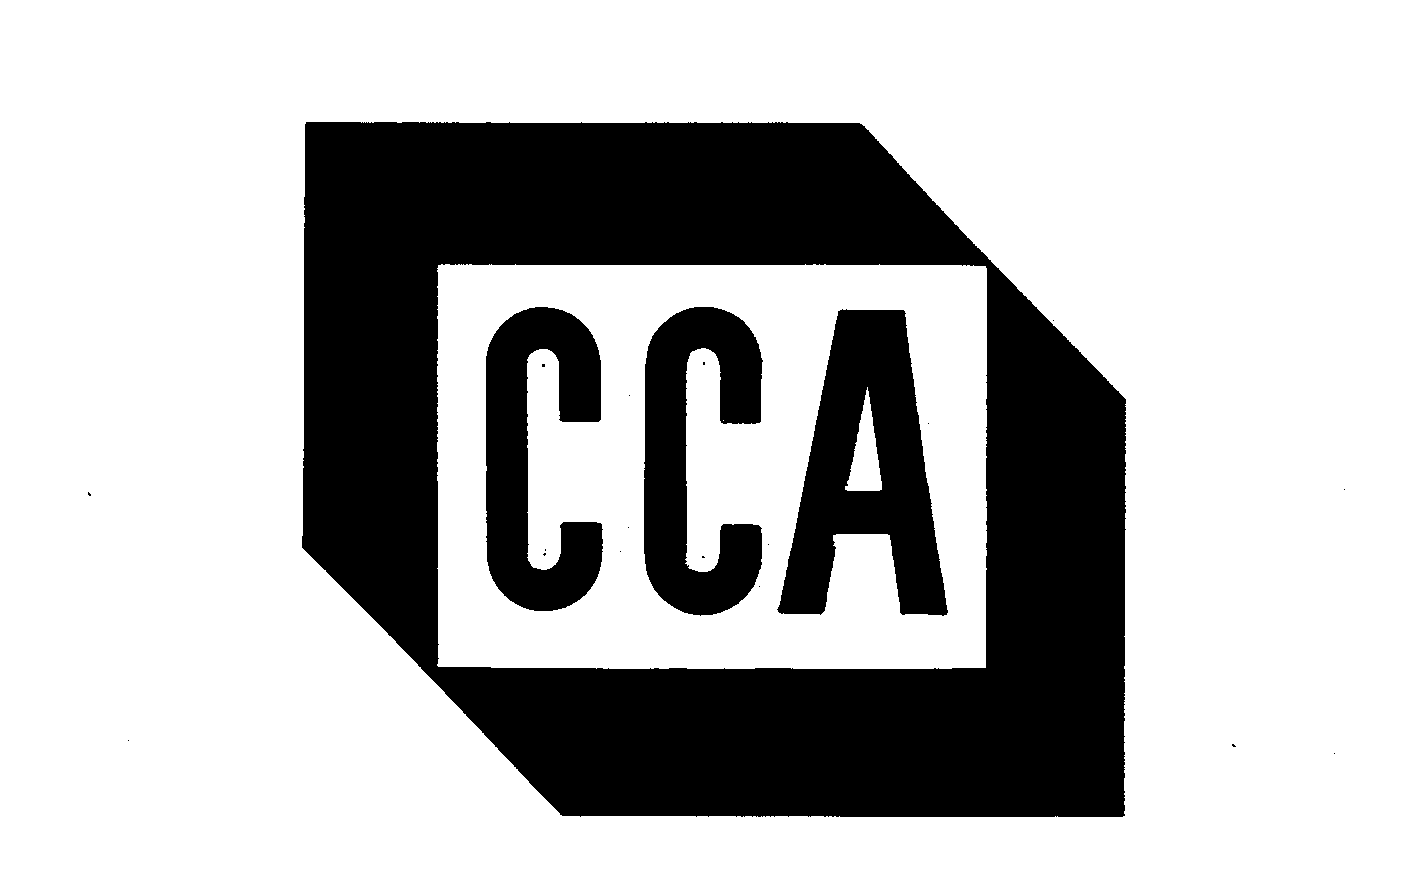 Trademark Logo CCA